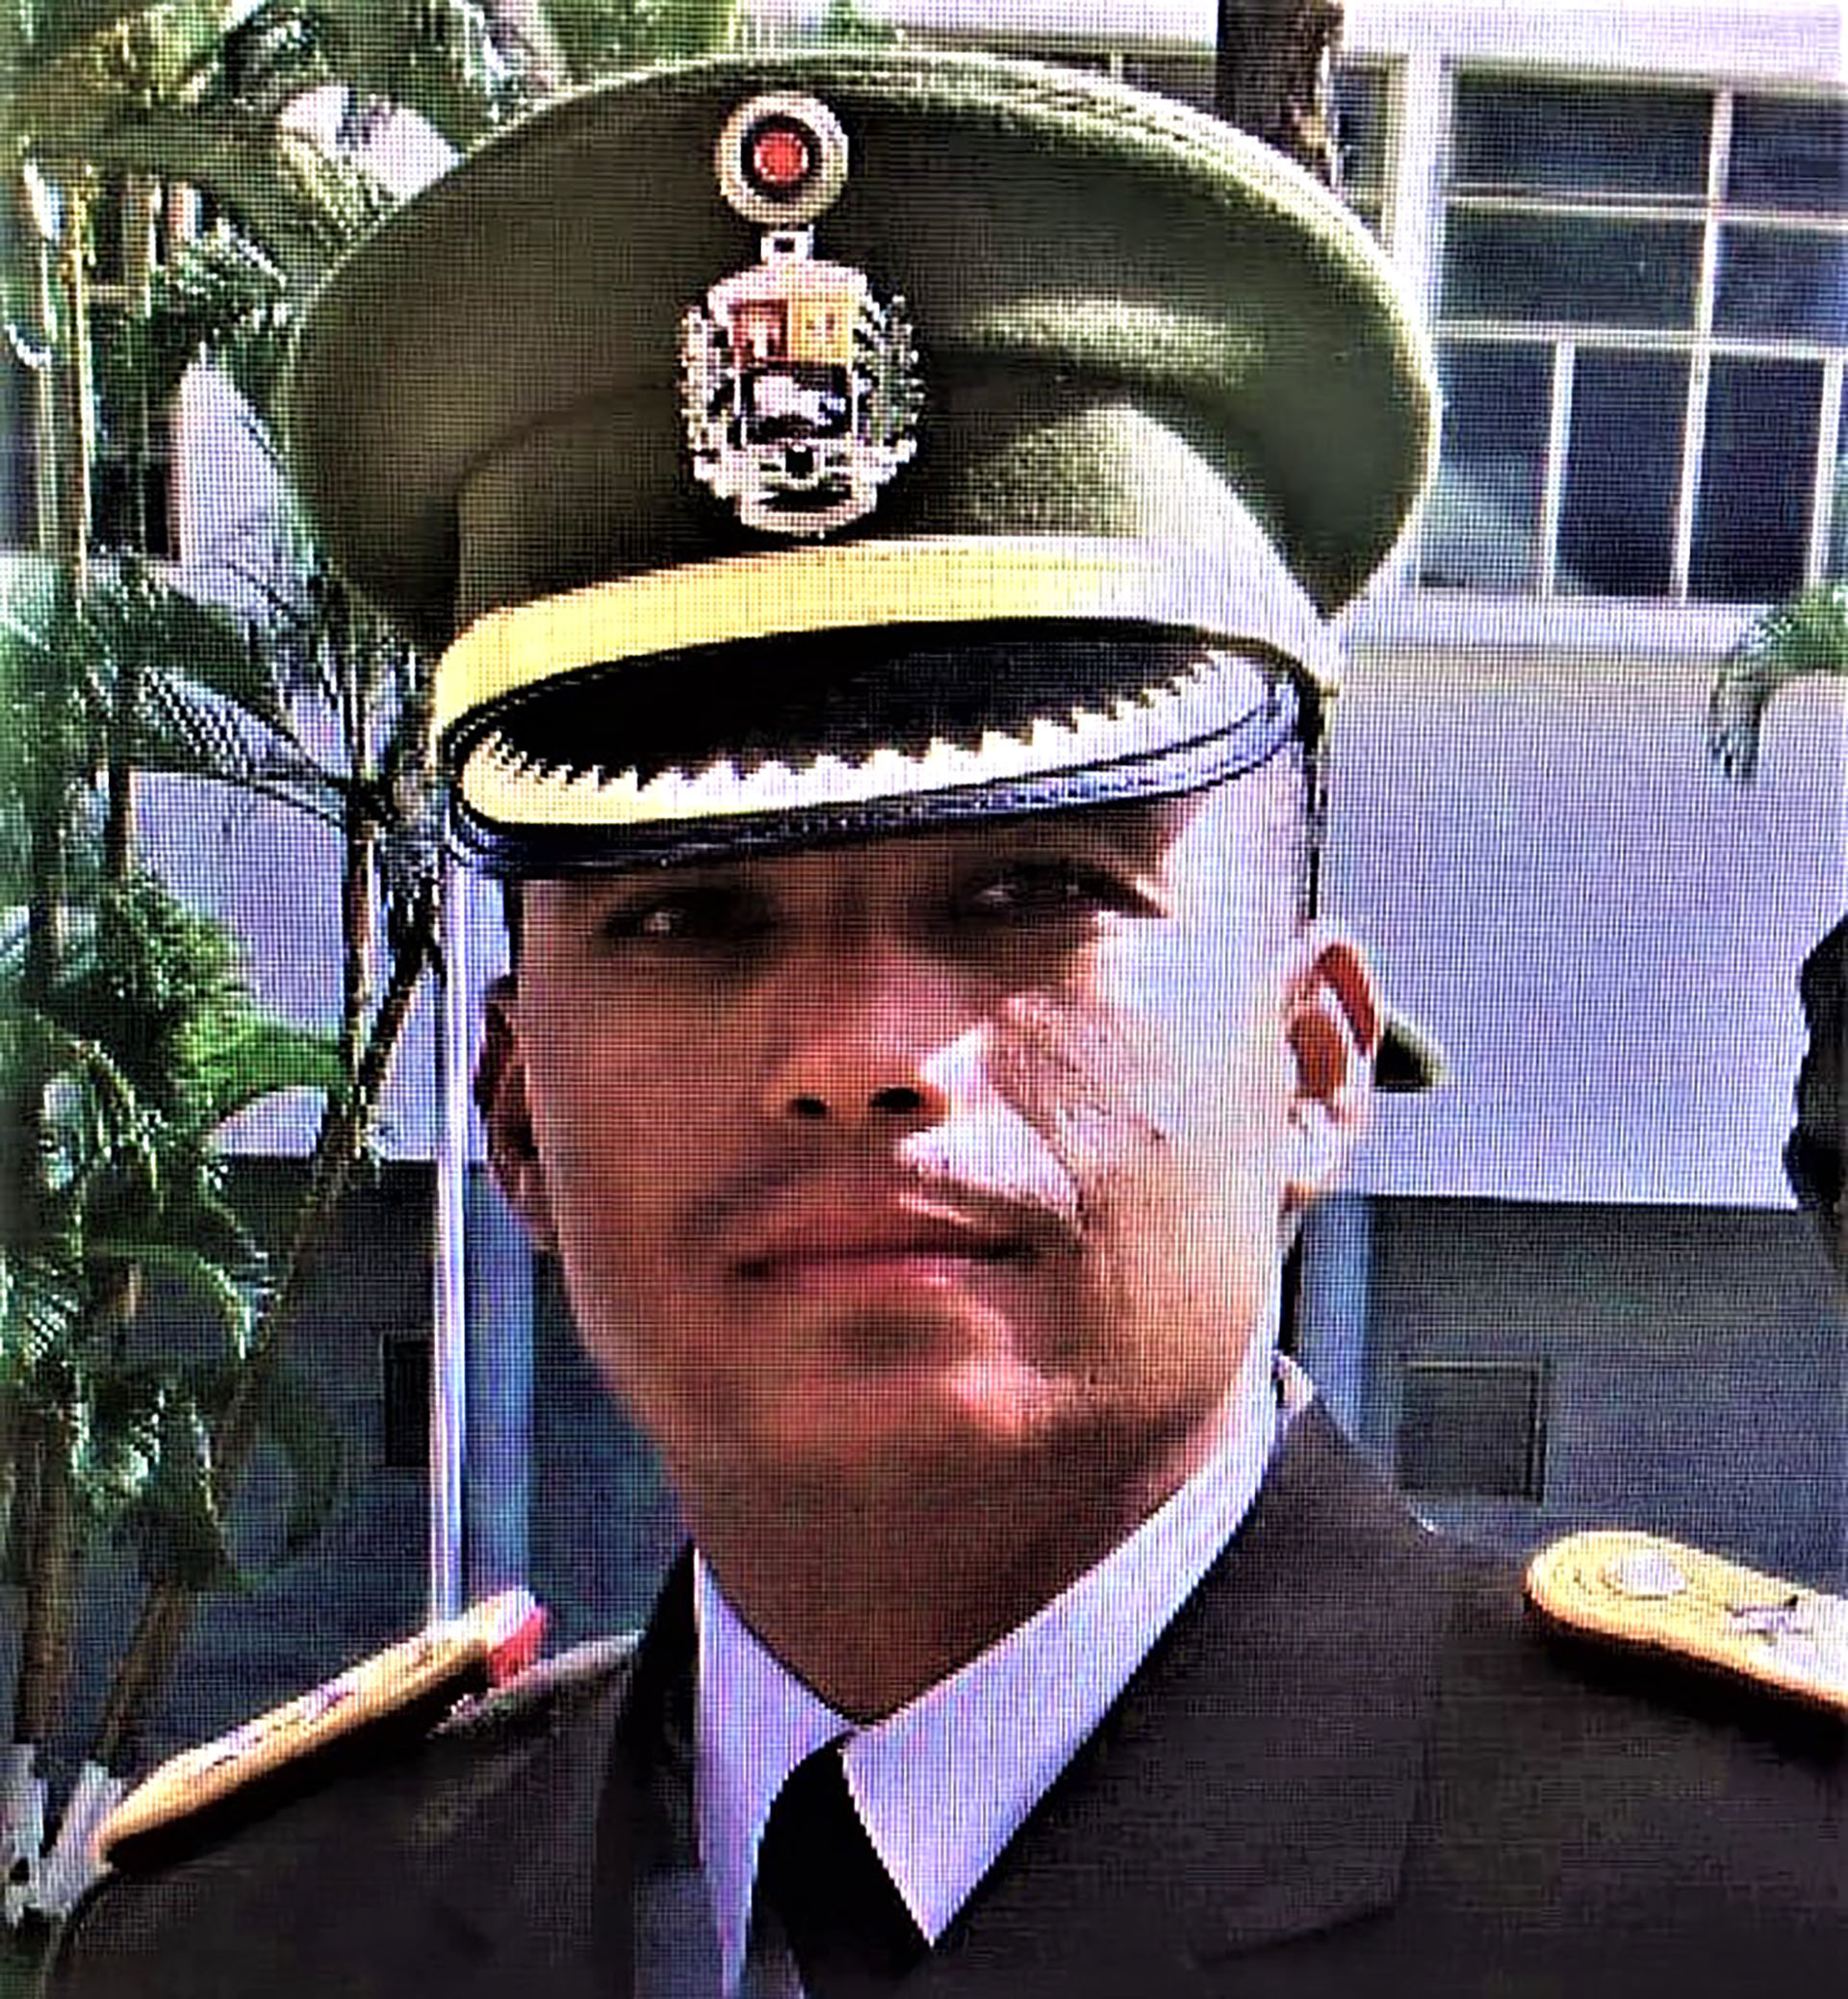 El Juez Mickel Enrique Amezquita Pion, quien ignoró las torturas según denuncia Medina